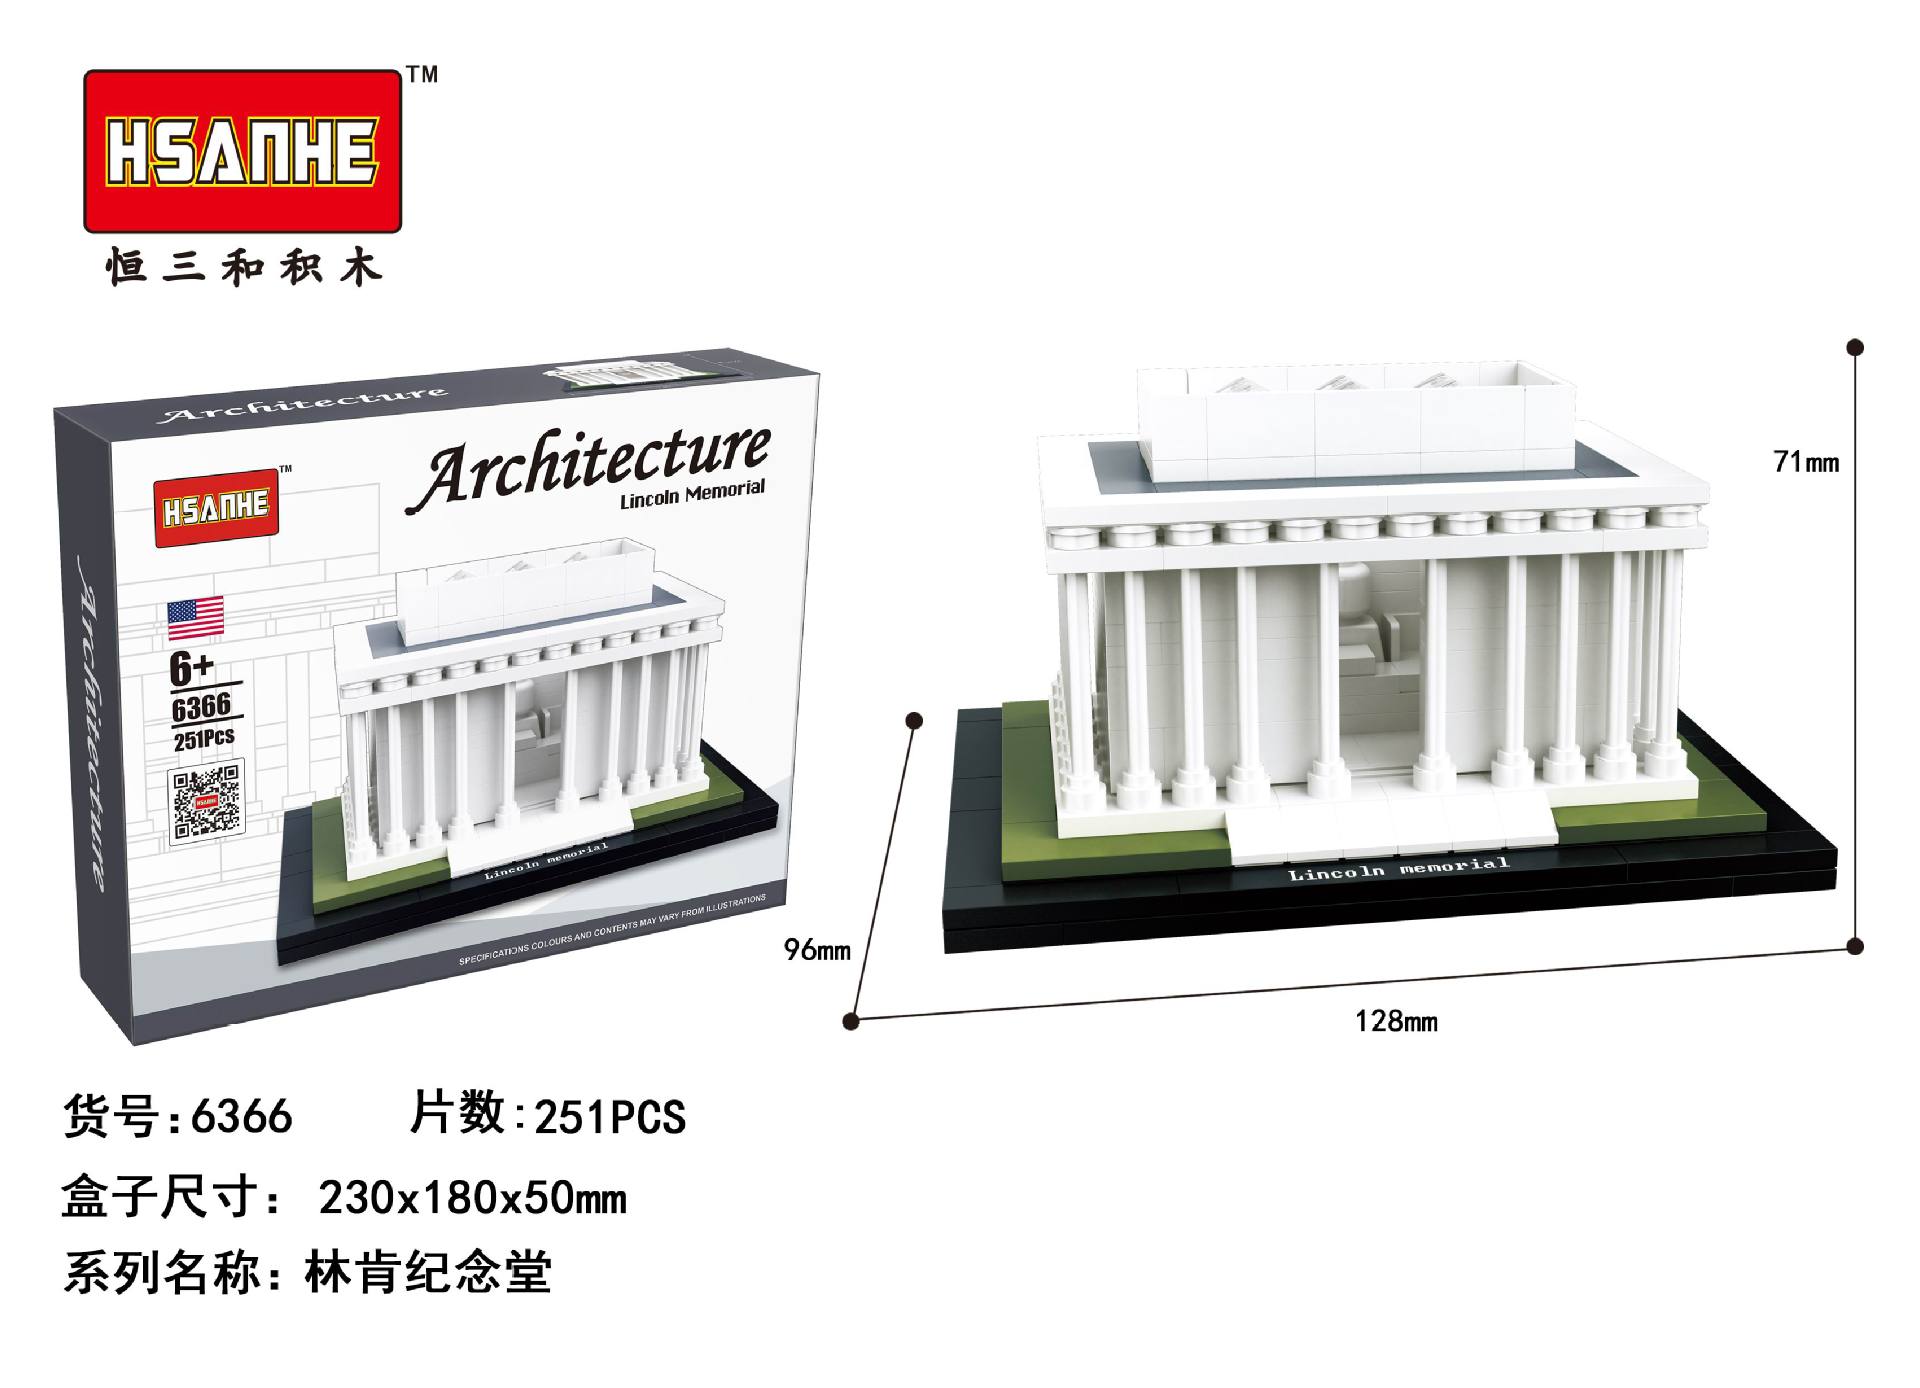 6366林肯纪念堂立体盒产品展示图